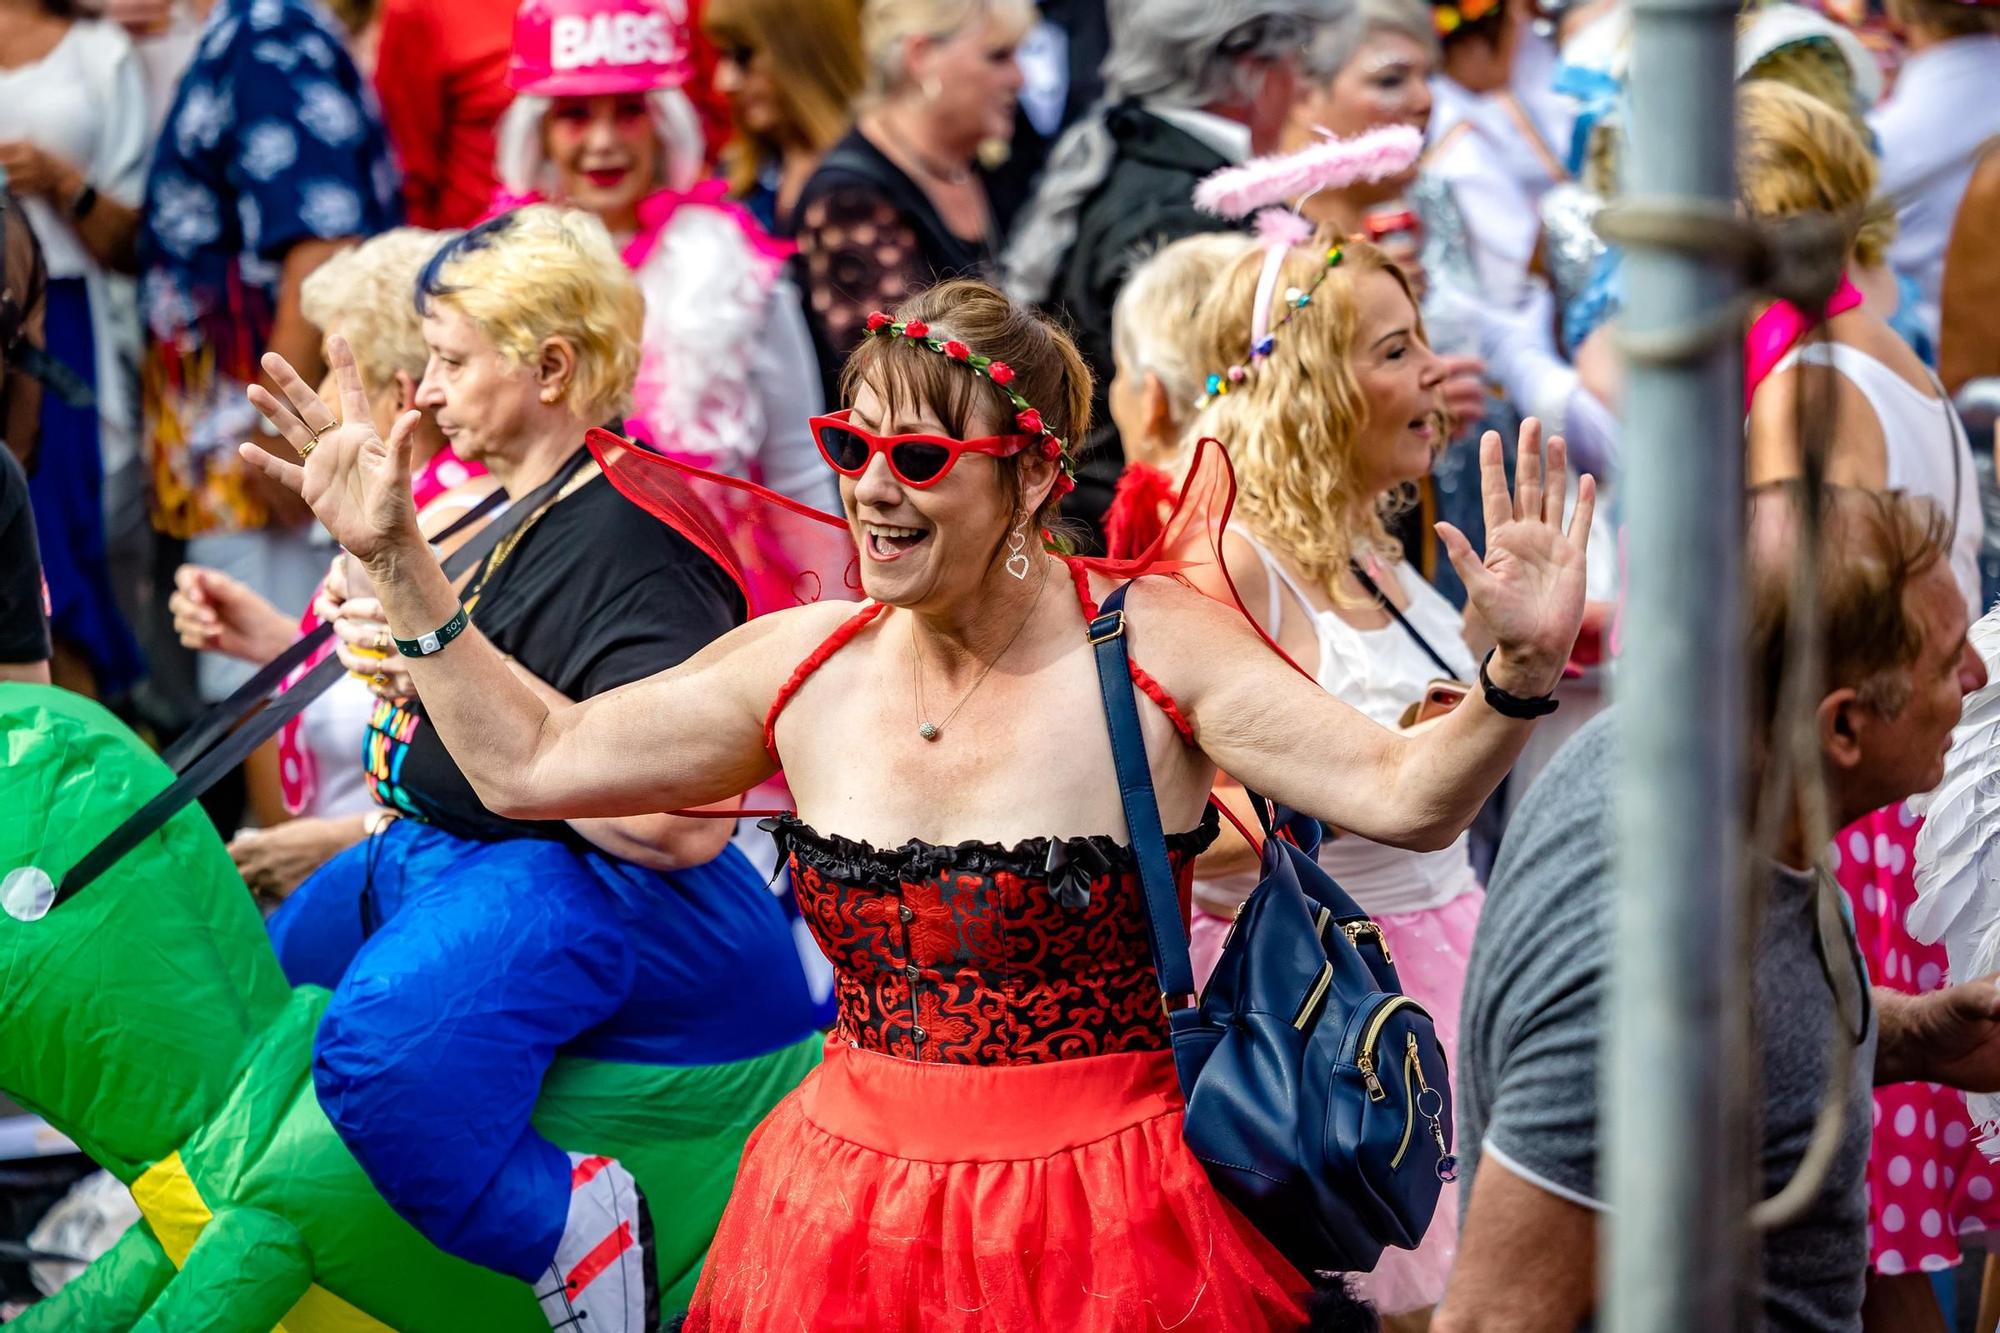 Así celebran los británicos la Fancy Dress Party 2023 en Benidorm